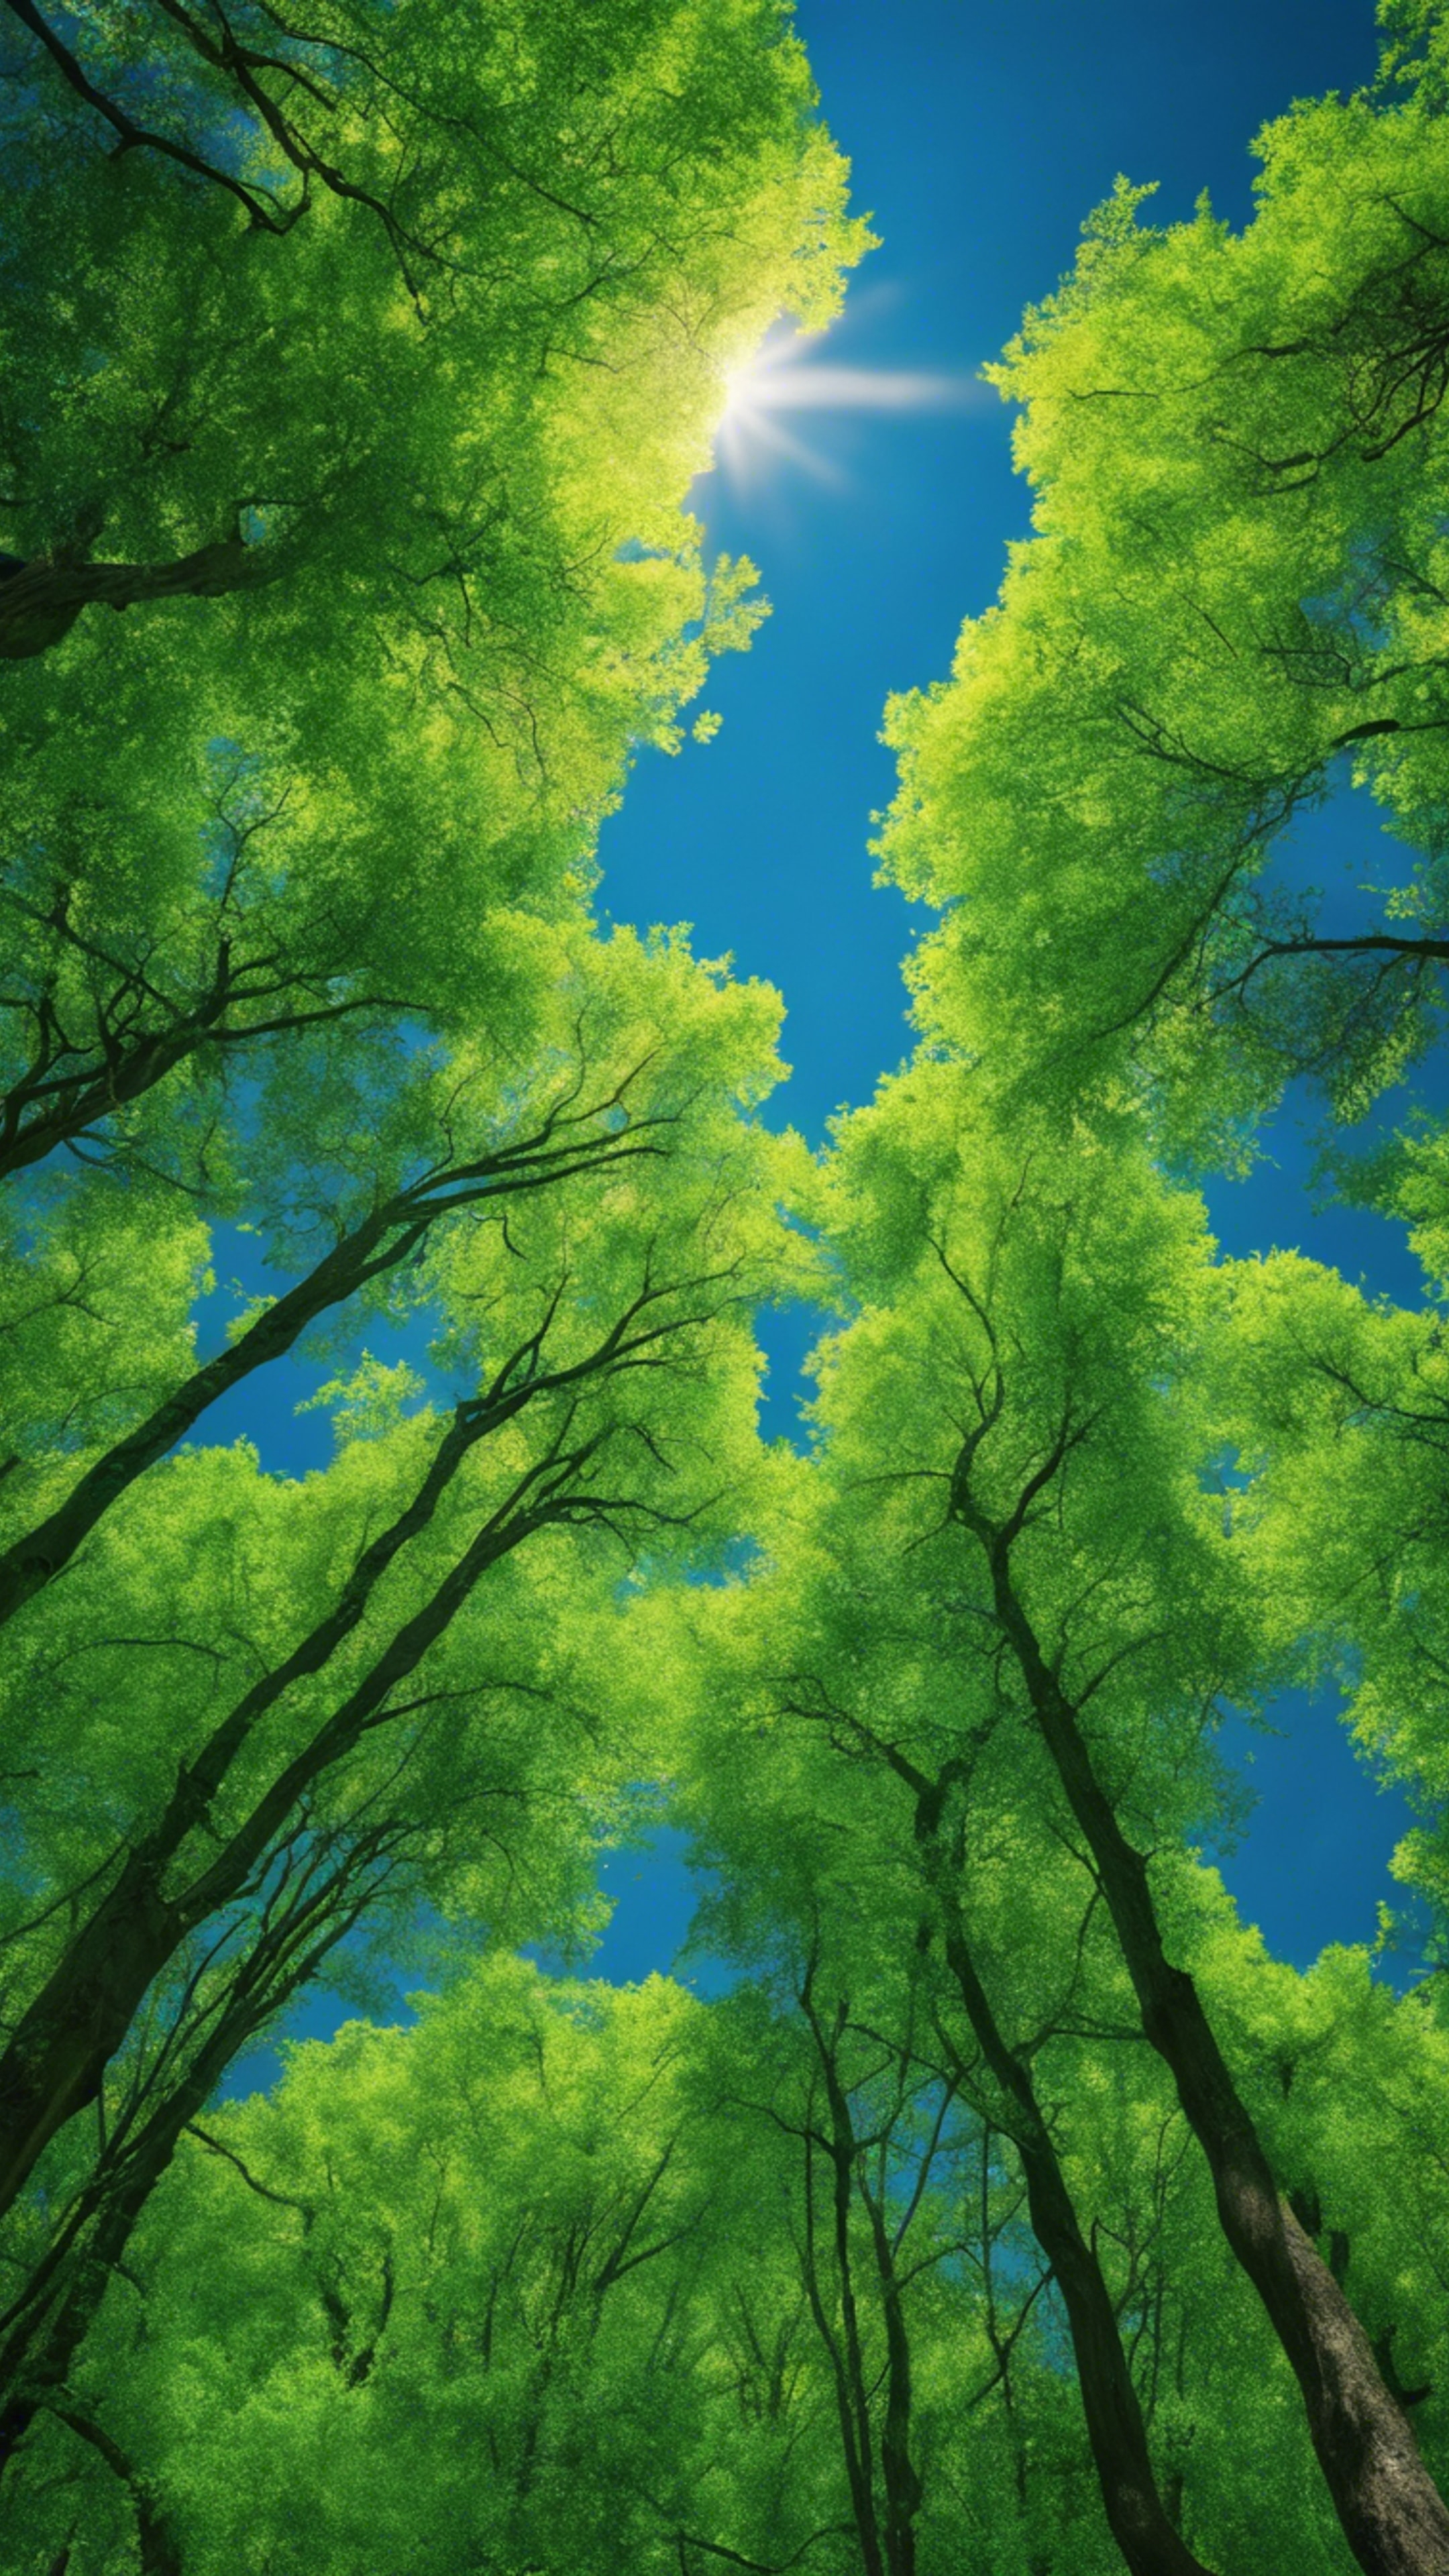 A vibrant green forest under a deep blue sky. Wallpaper[dfb81149561043a7a18e]